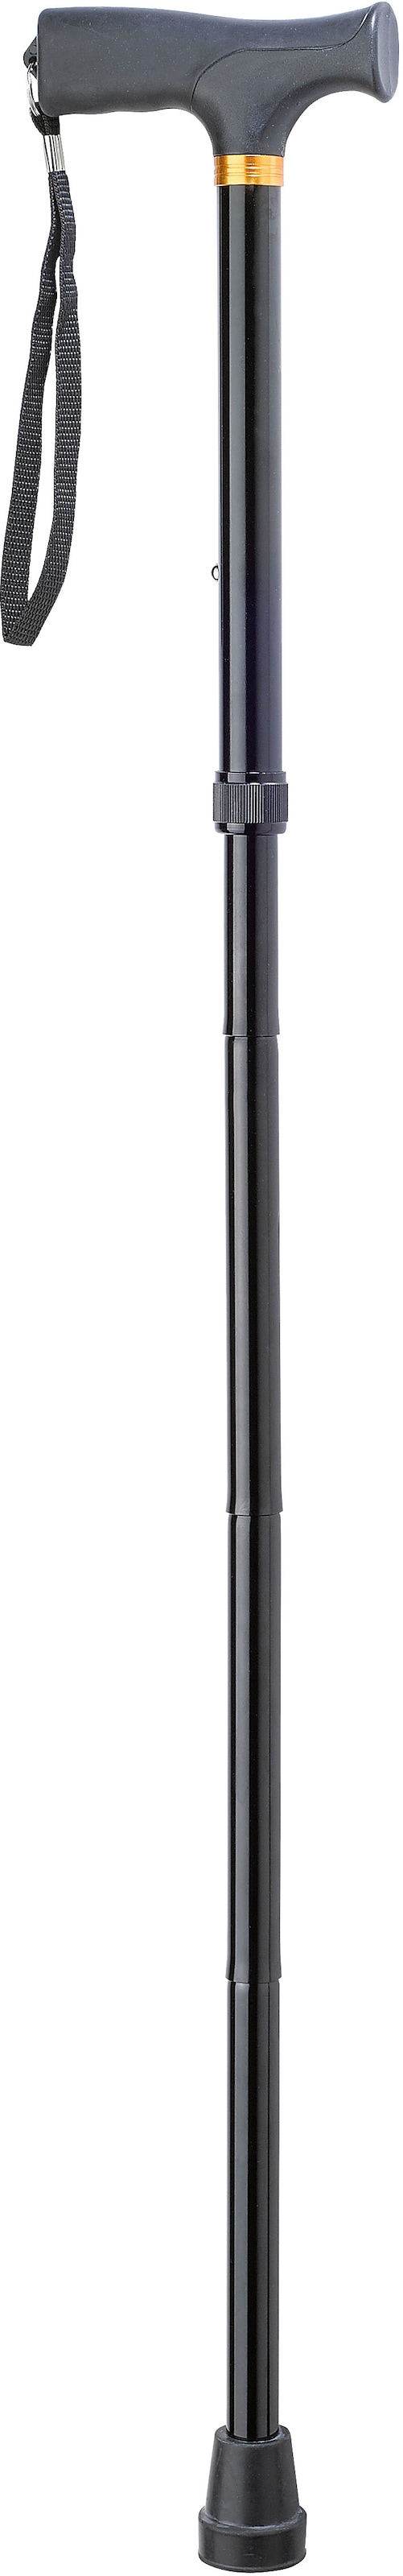 Gehstock, 5-fach höhenverstellbar von 84 - 94 cm